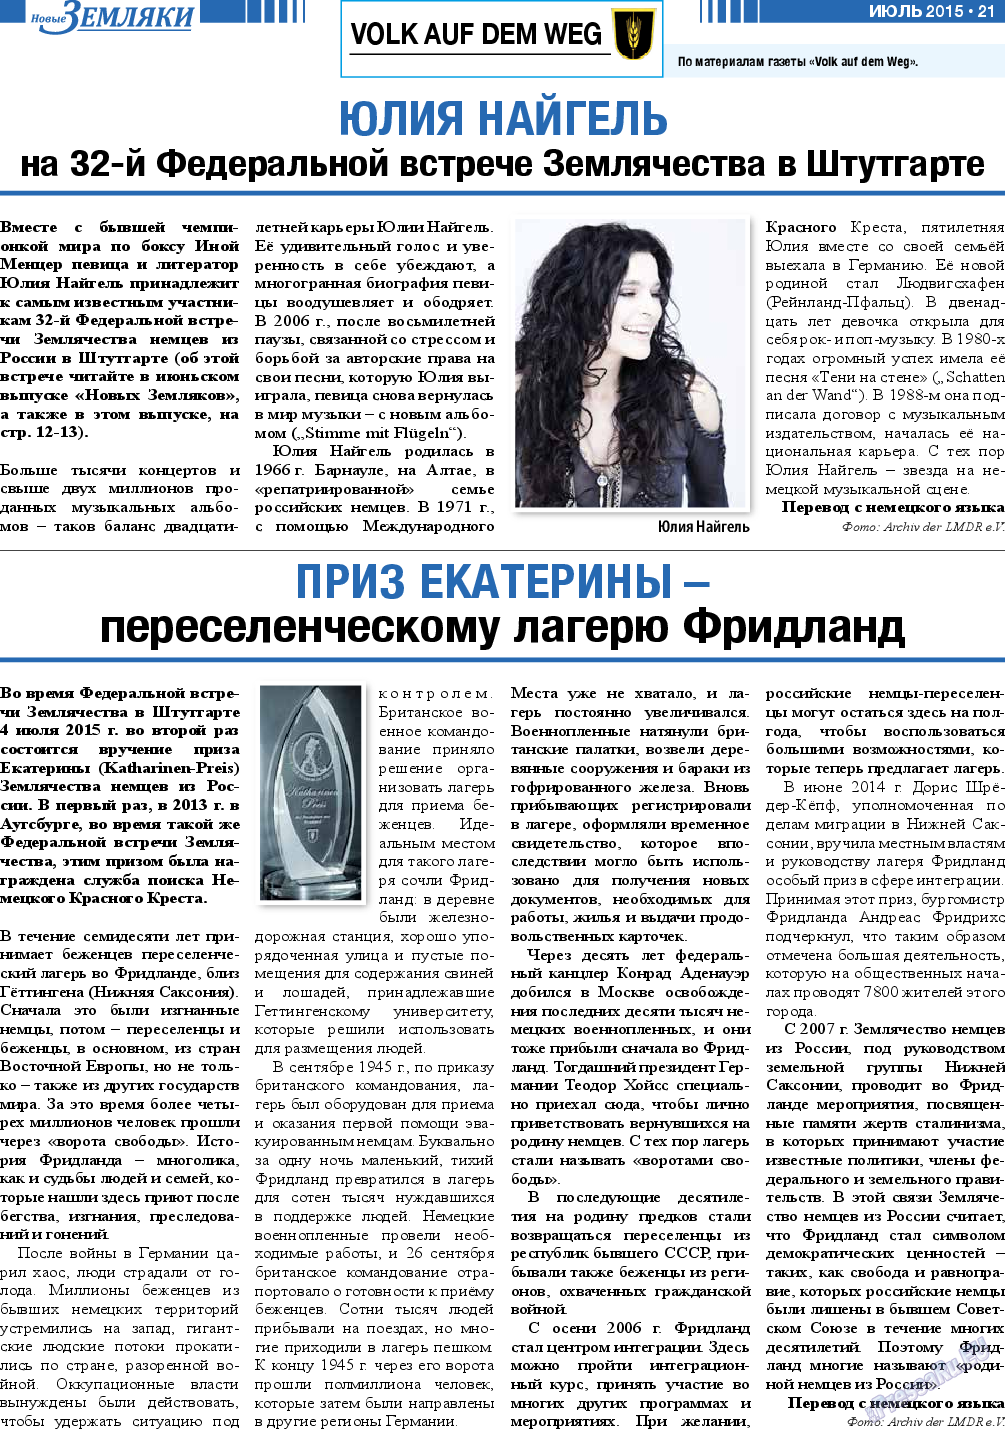 Новые Земляки, газета. 2015 №7 стр.21